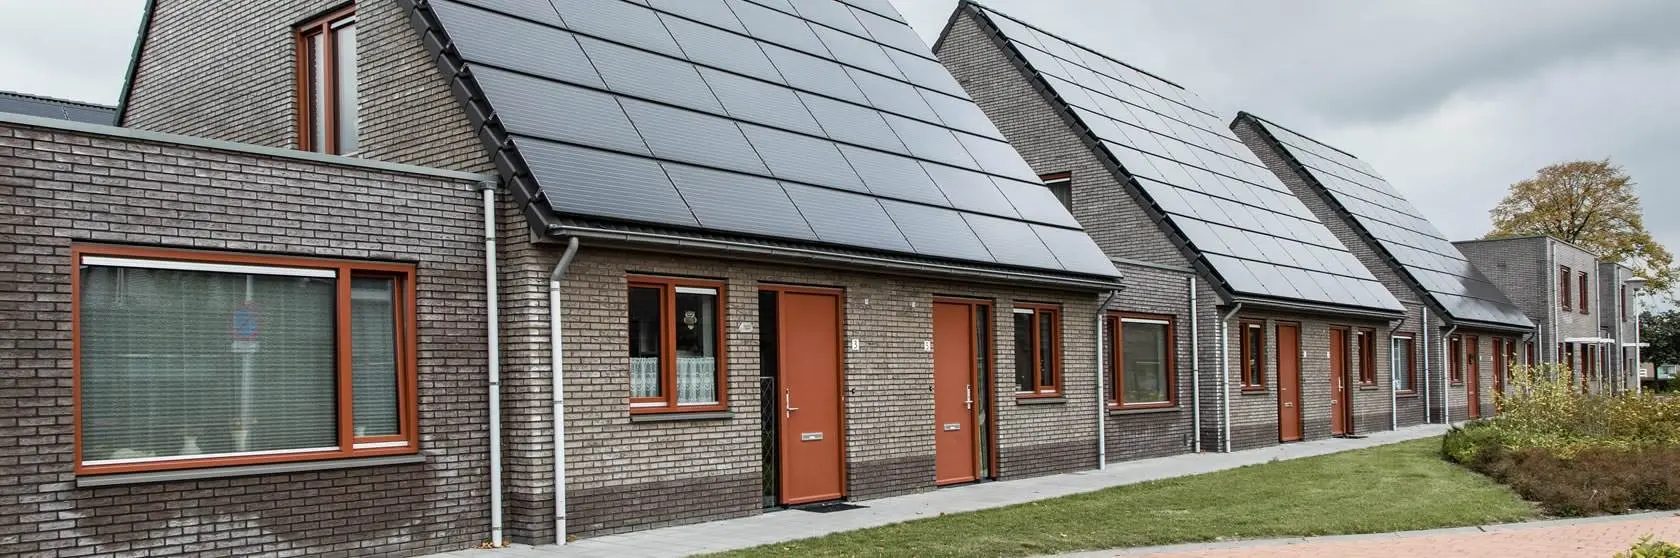 Duurzaamheidsconcepten van installatiebedrijf Mampaey actief in Papendrecht en omgeving